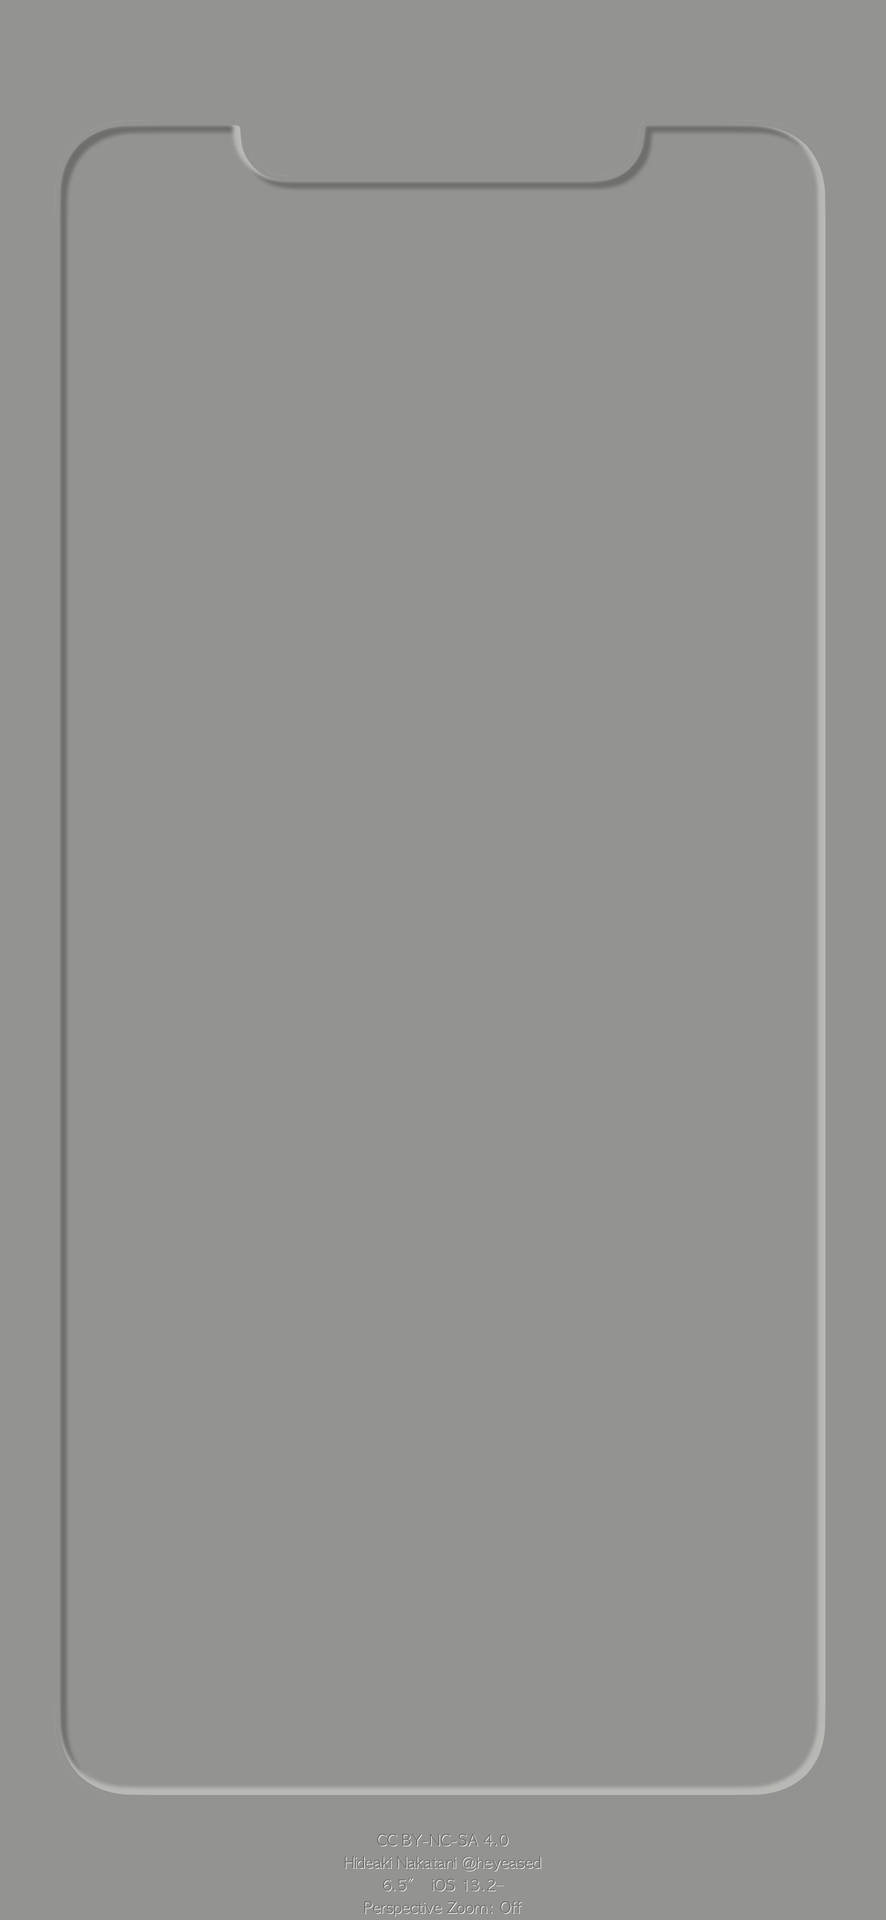 Outline 3d Dark Gray Display Iphone Wallpaper